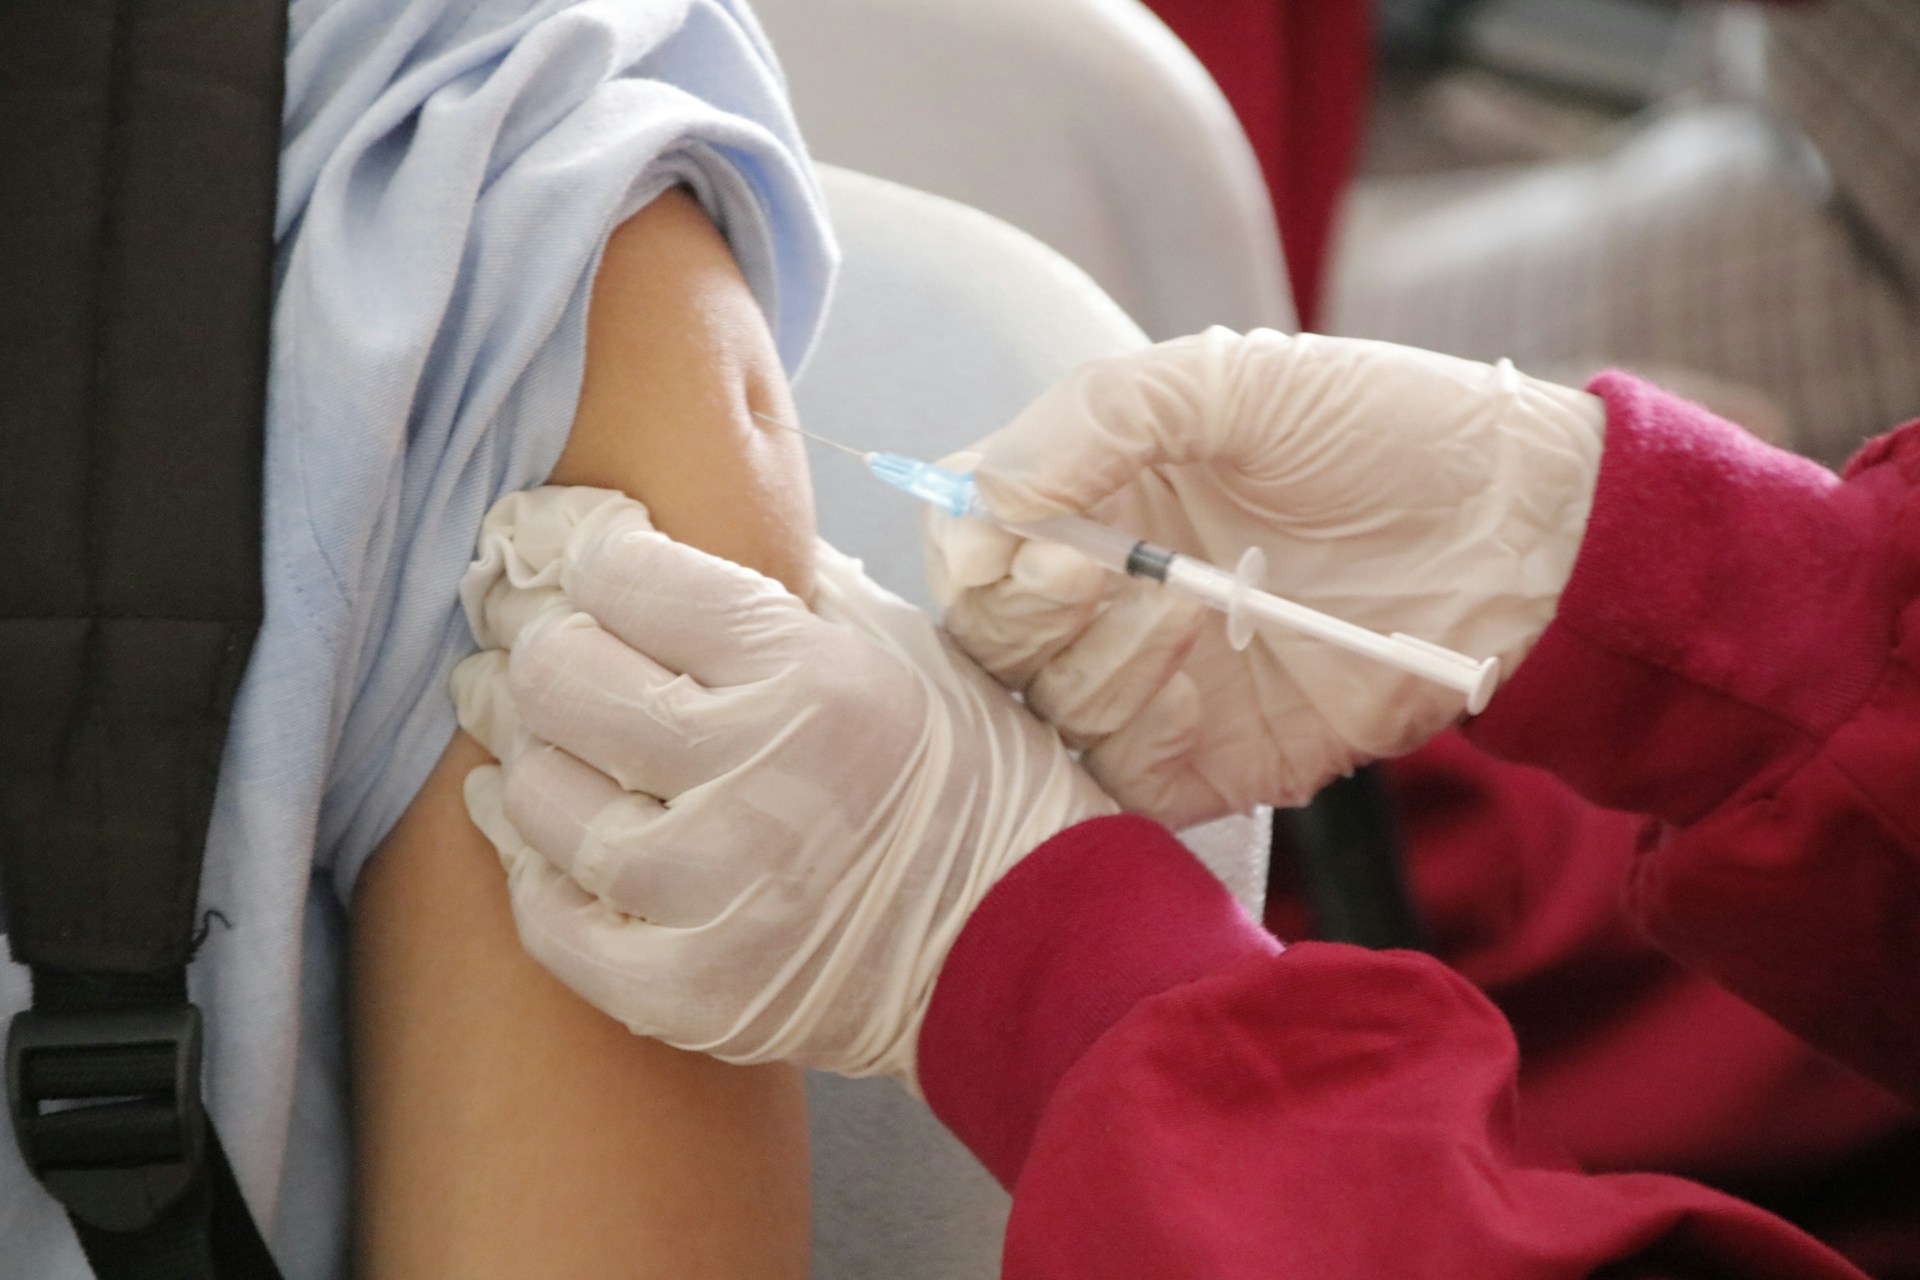 Tomar vacina em braço diferente aumenta imunidade? O que diz a ciência